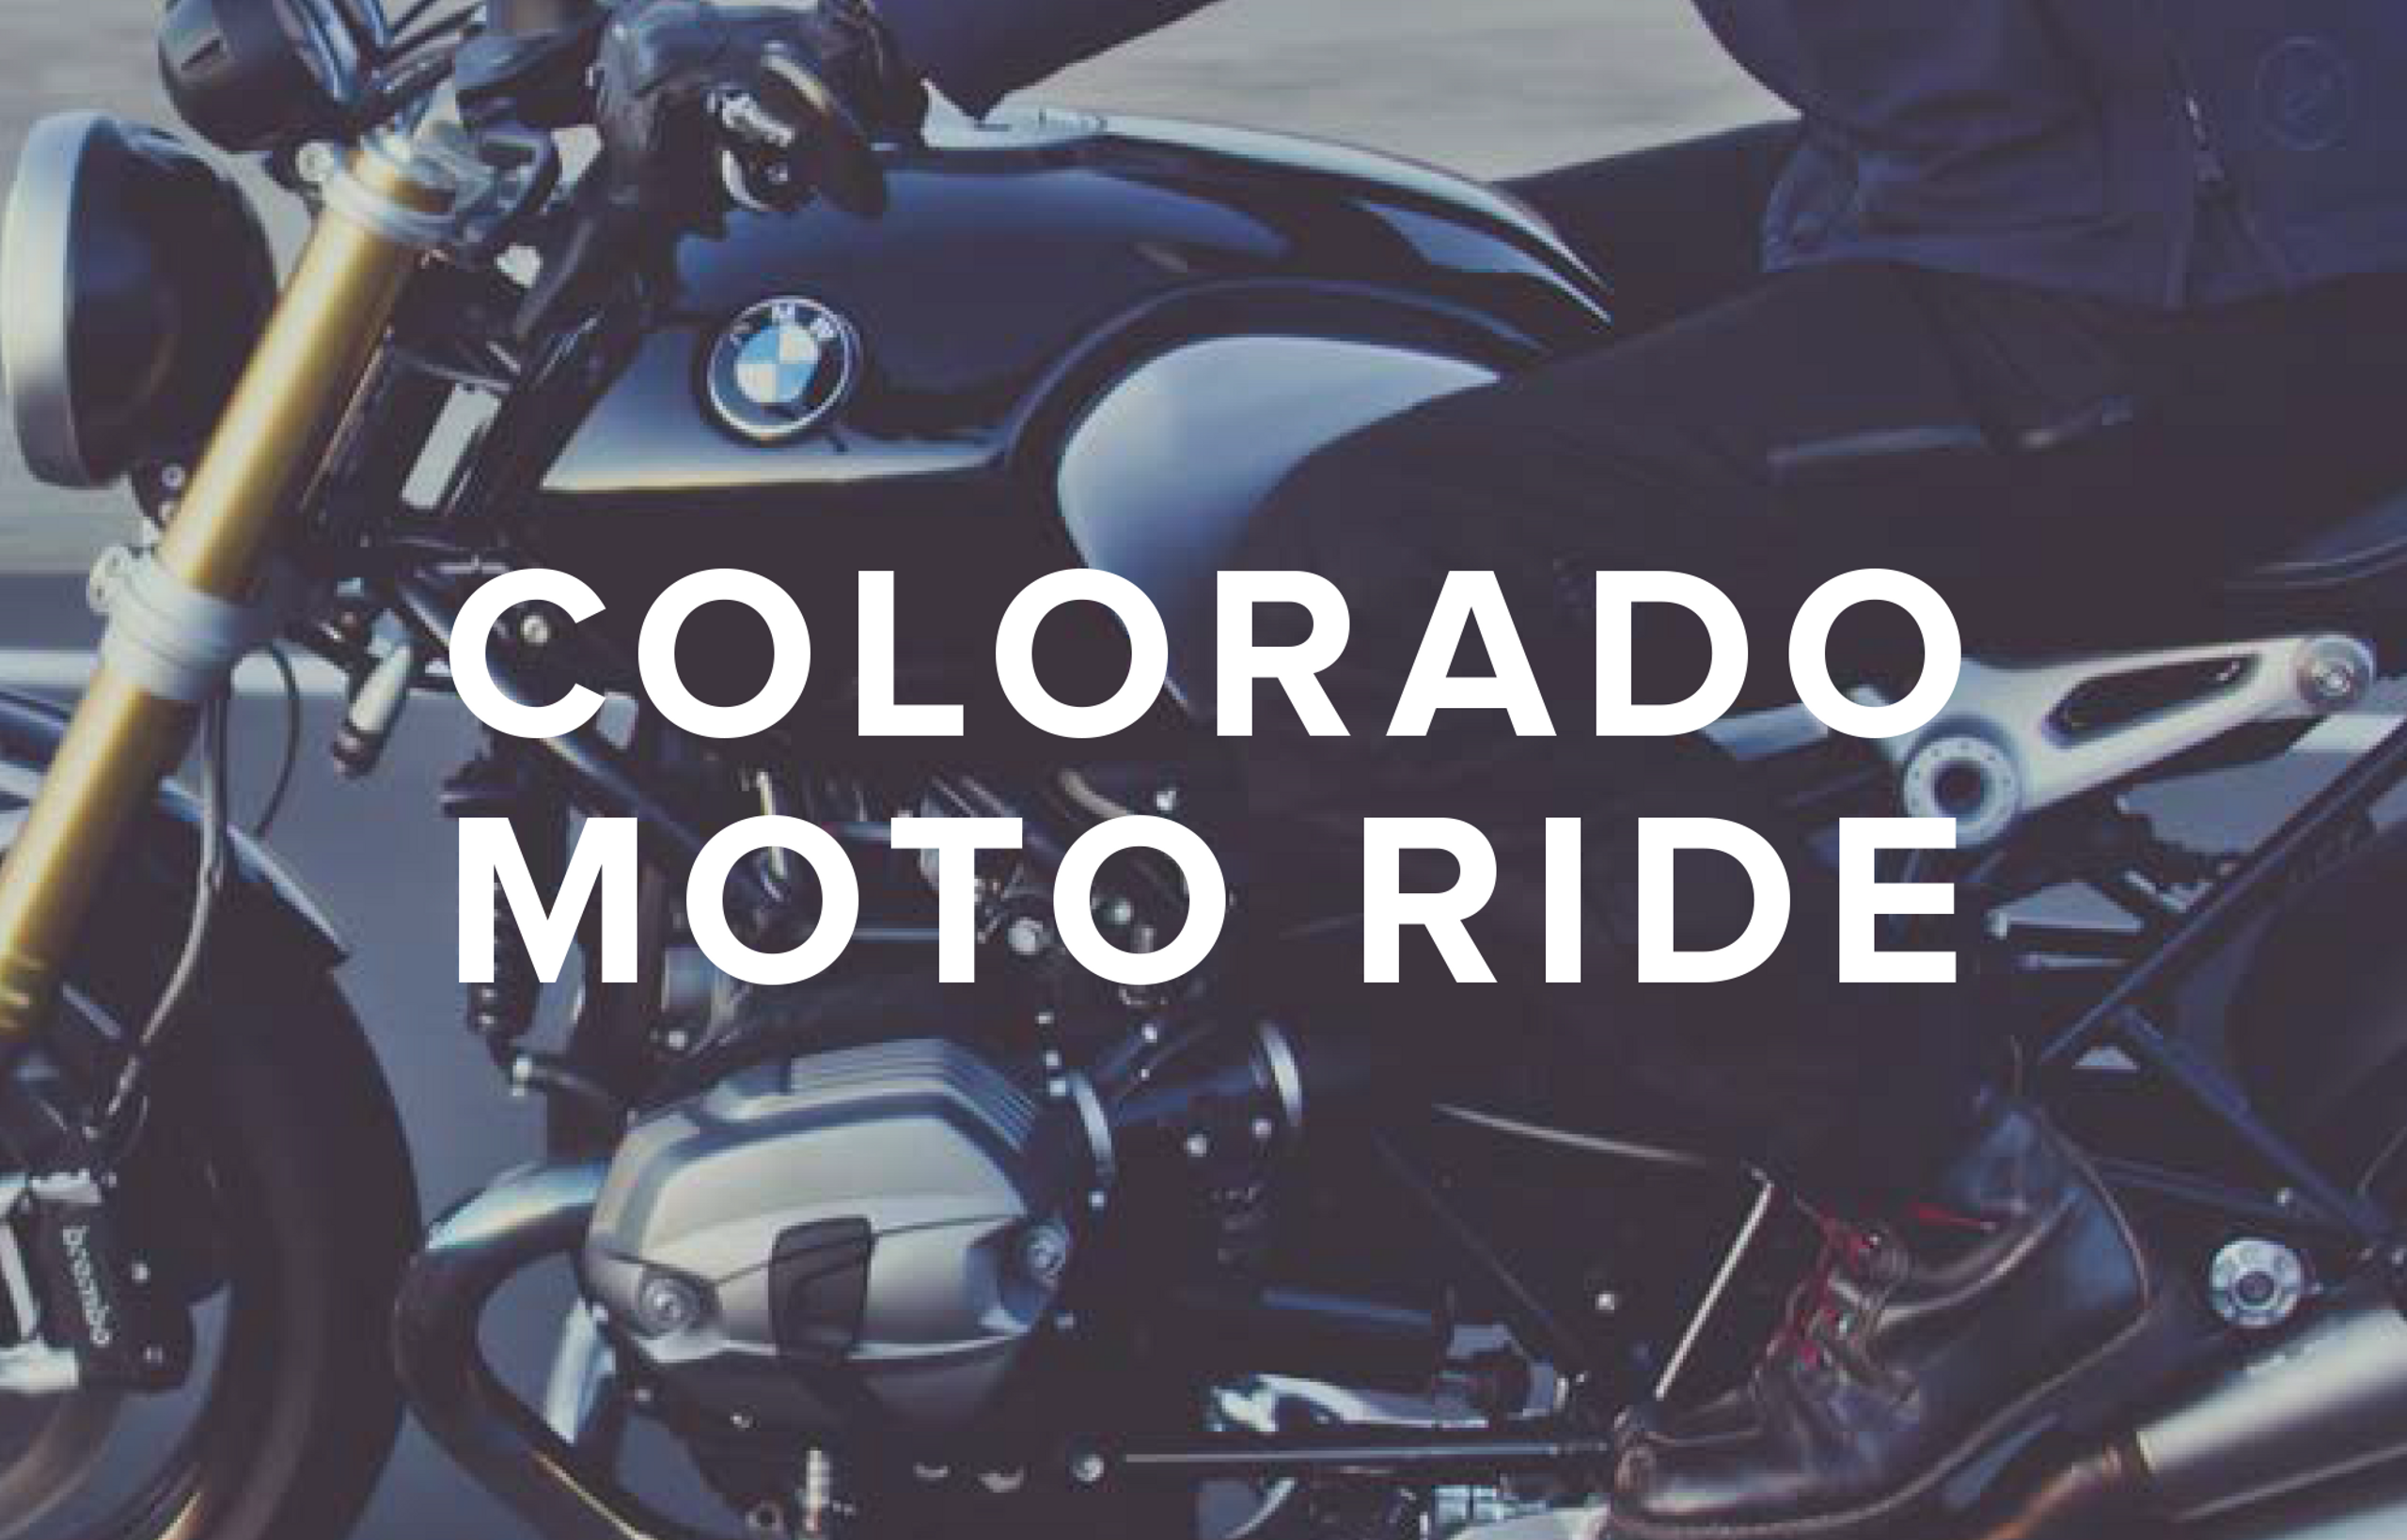 motorcycle with words "colorado moto ride"